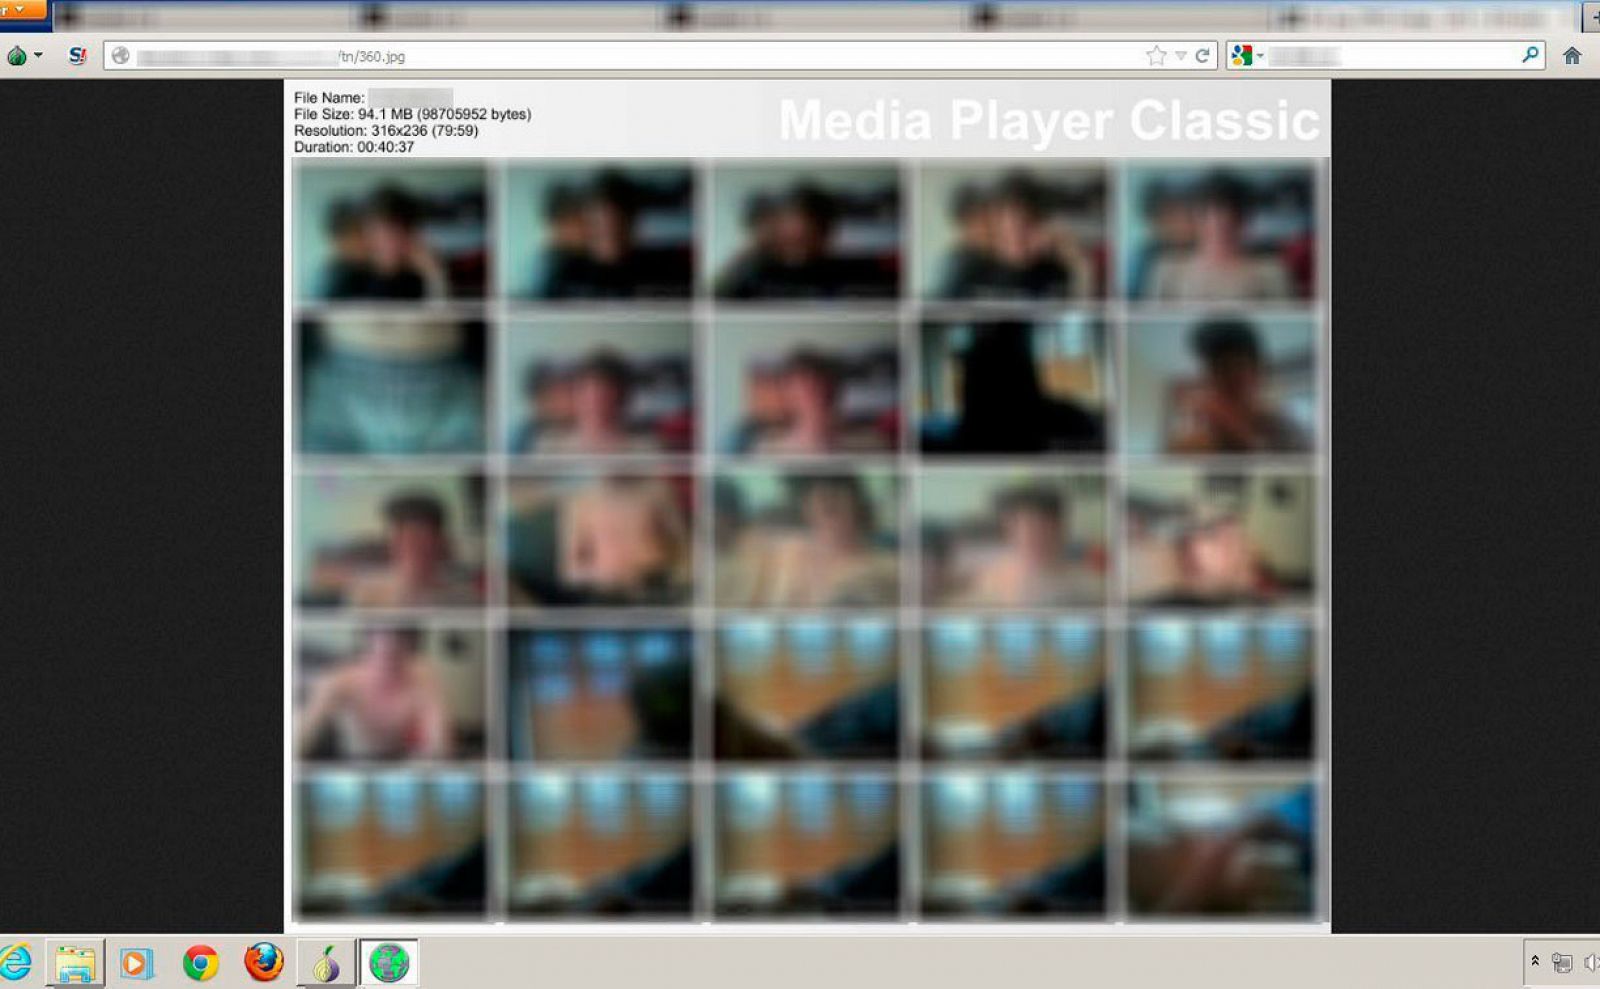 Archivos de menores en actitudes pornográficas en la pantalla de un ordenador.